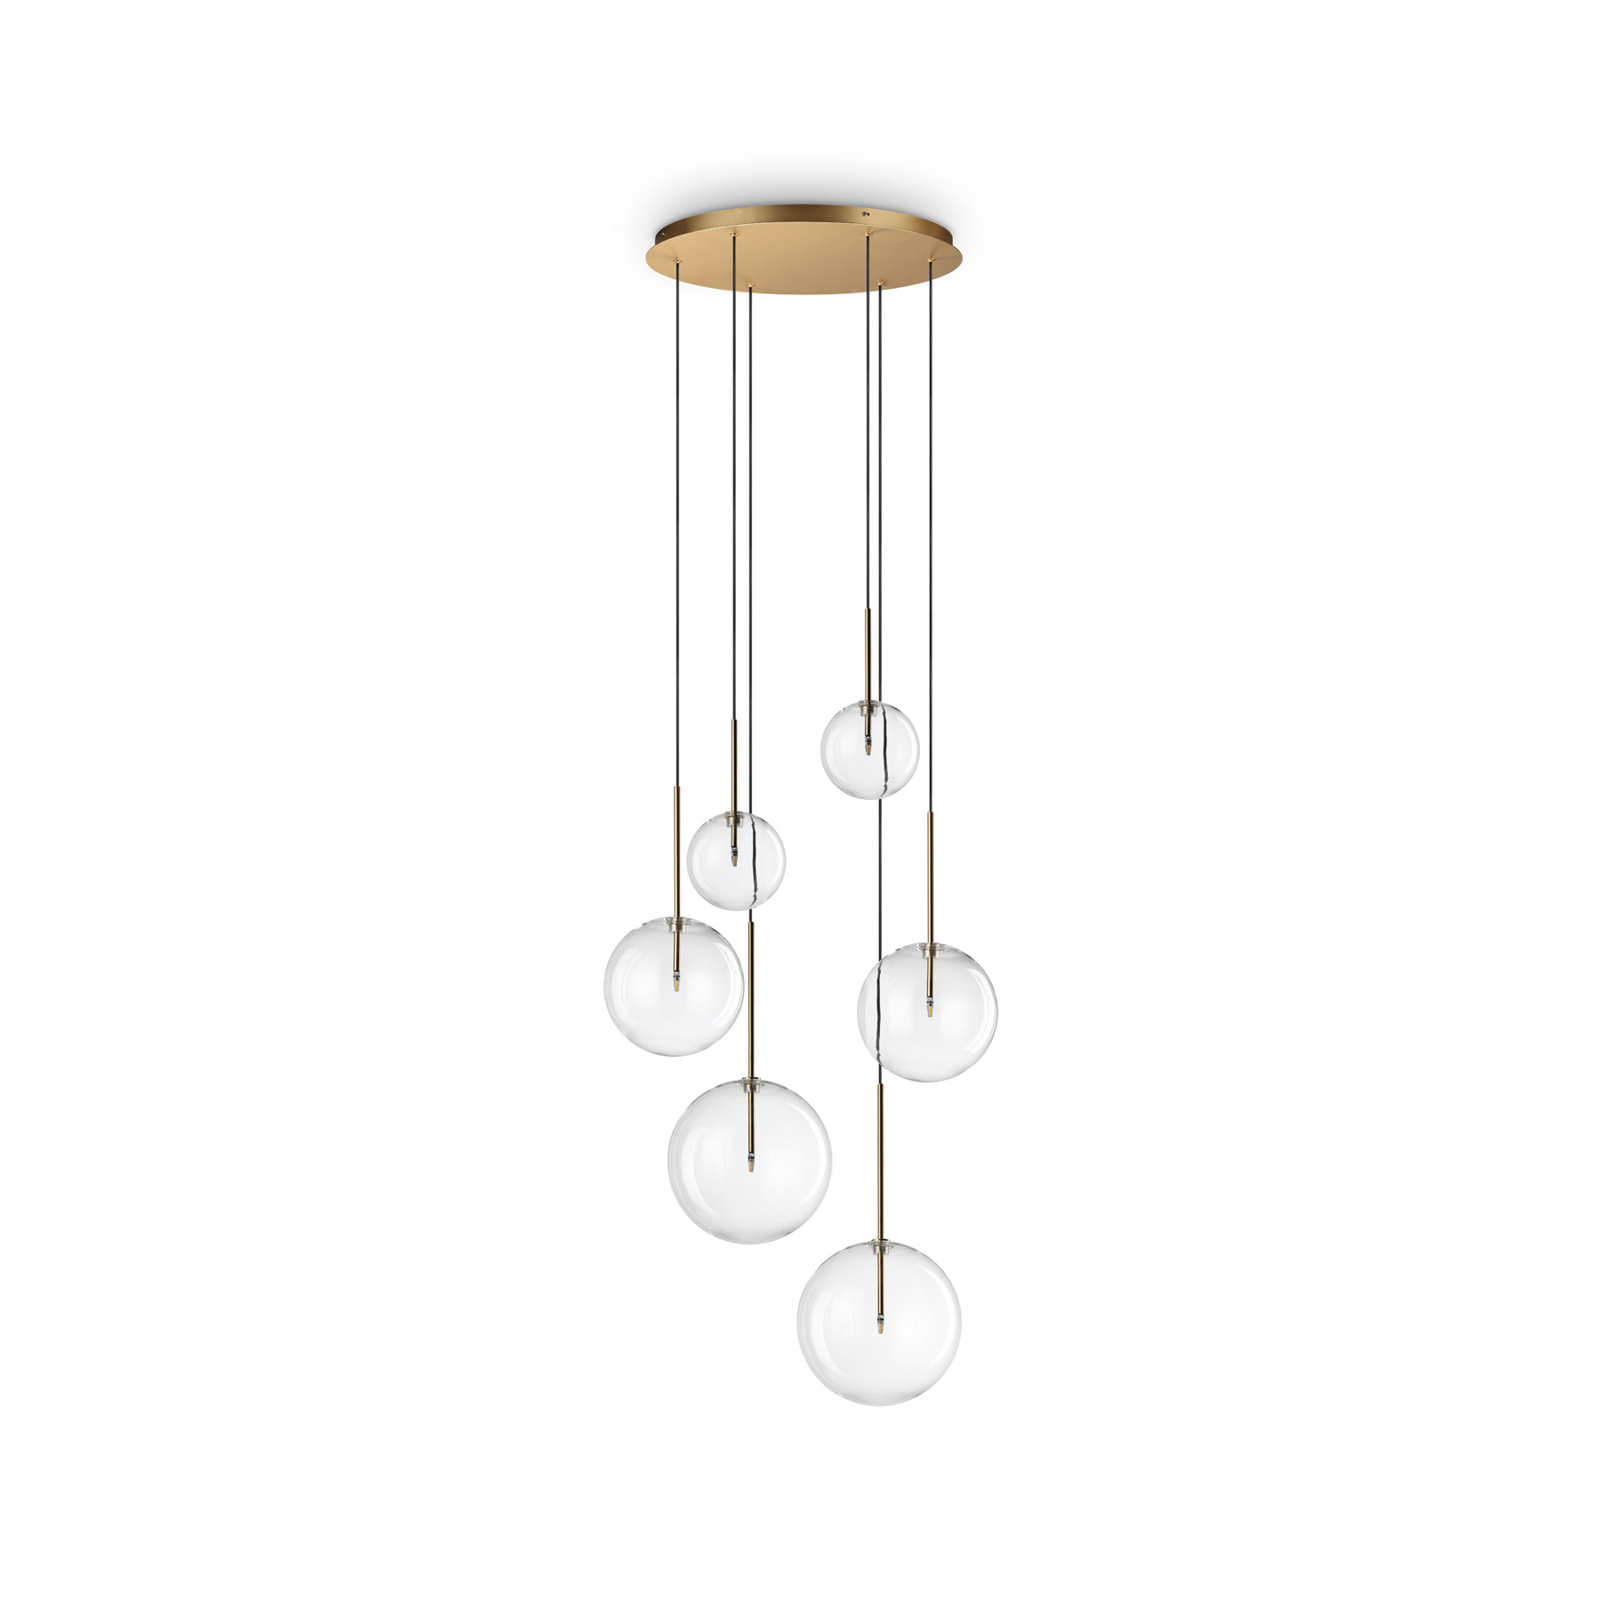 Ideal Lux Equinoxe hanglamp 6-lamps messingkleurig helder glas